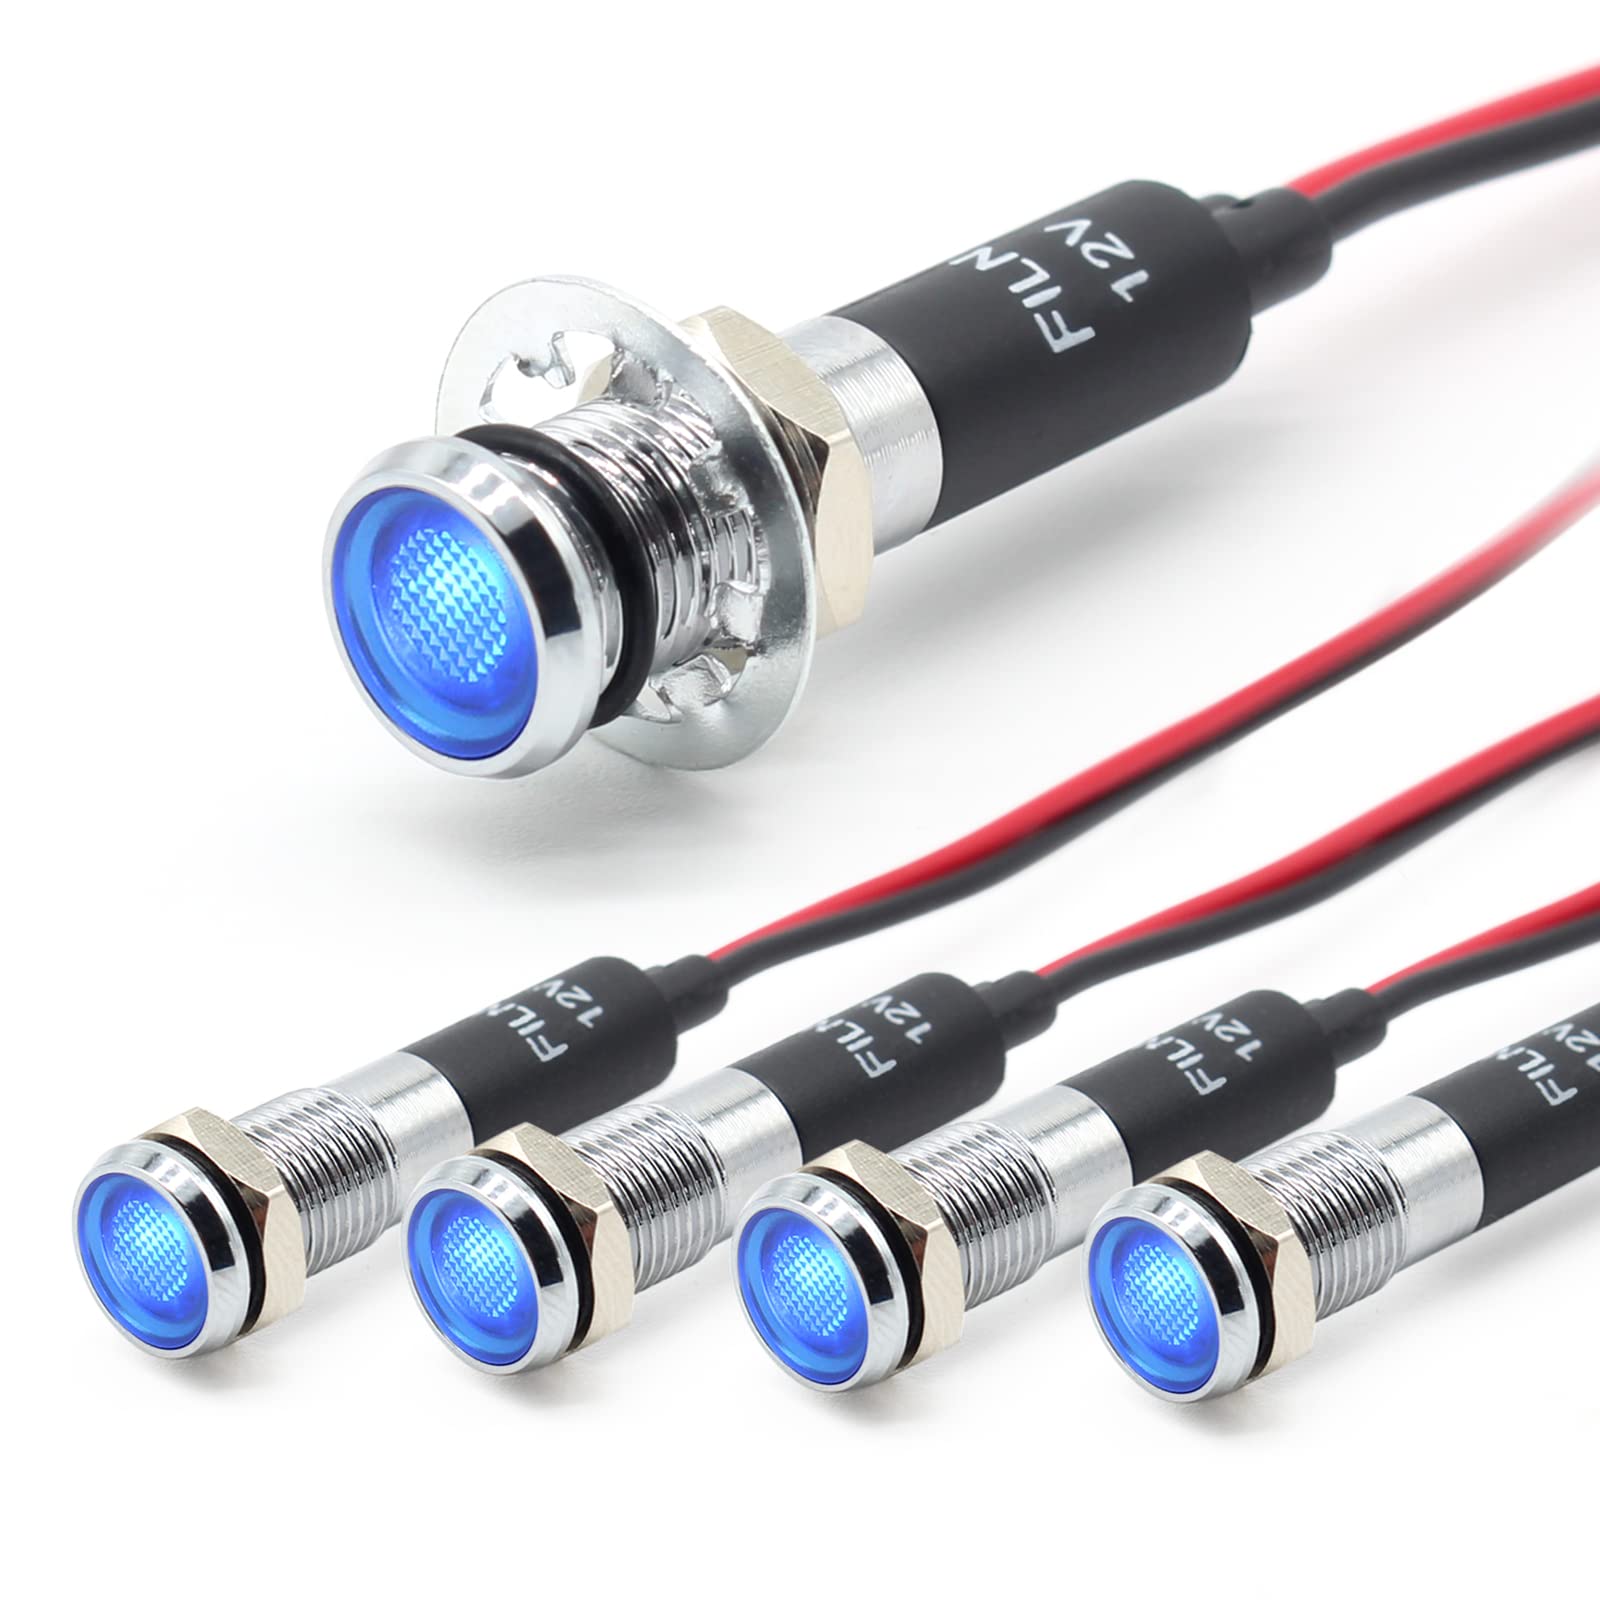 FILN 5 stücke 8mm (5/16 ") 12V LED kontrollleuchte wasserdichte pilot signallampe Meldeleuchte metalltafelleuchten(Messing vernickelt,blau5stück) von FILN